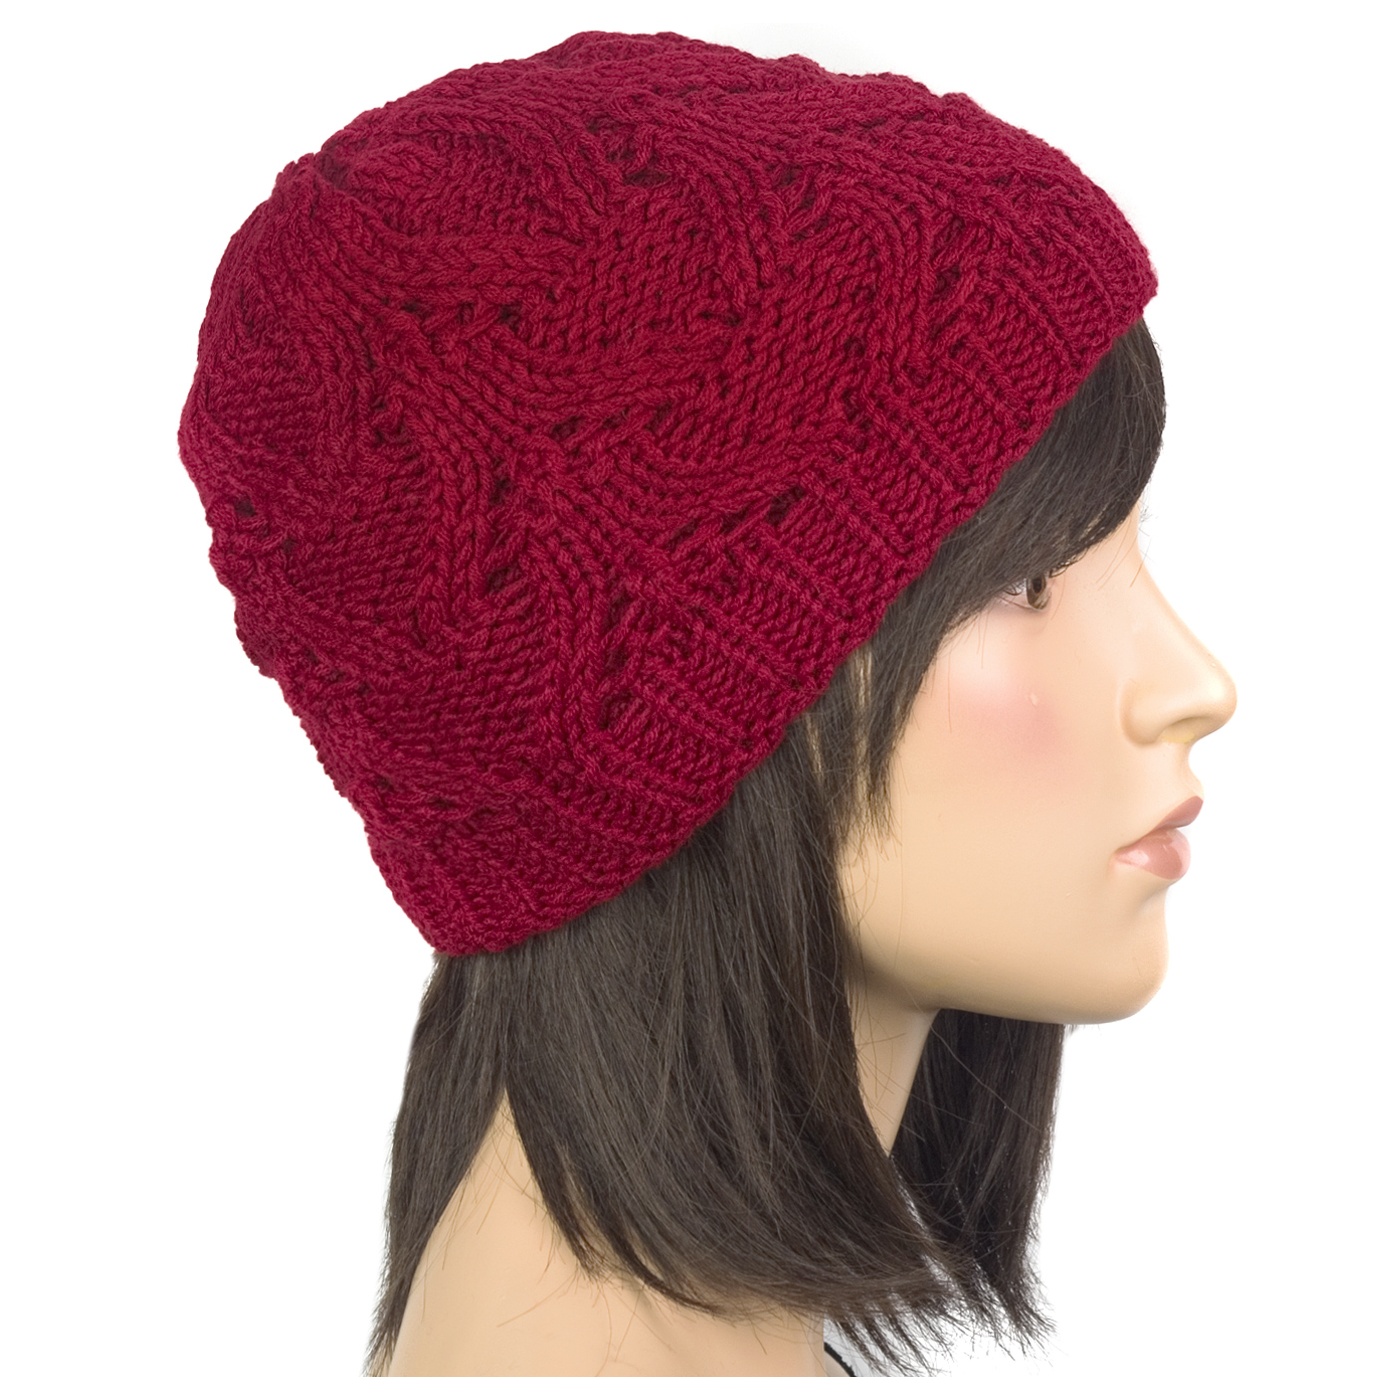 Klasyczna zimowa czapka damska z ażurowym splotem: czerwona